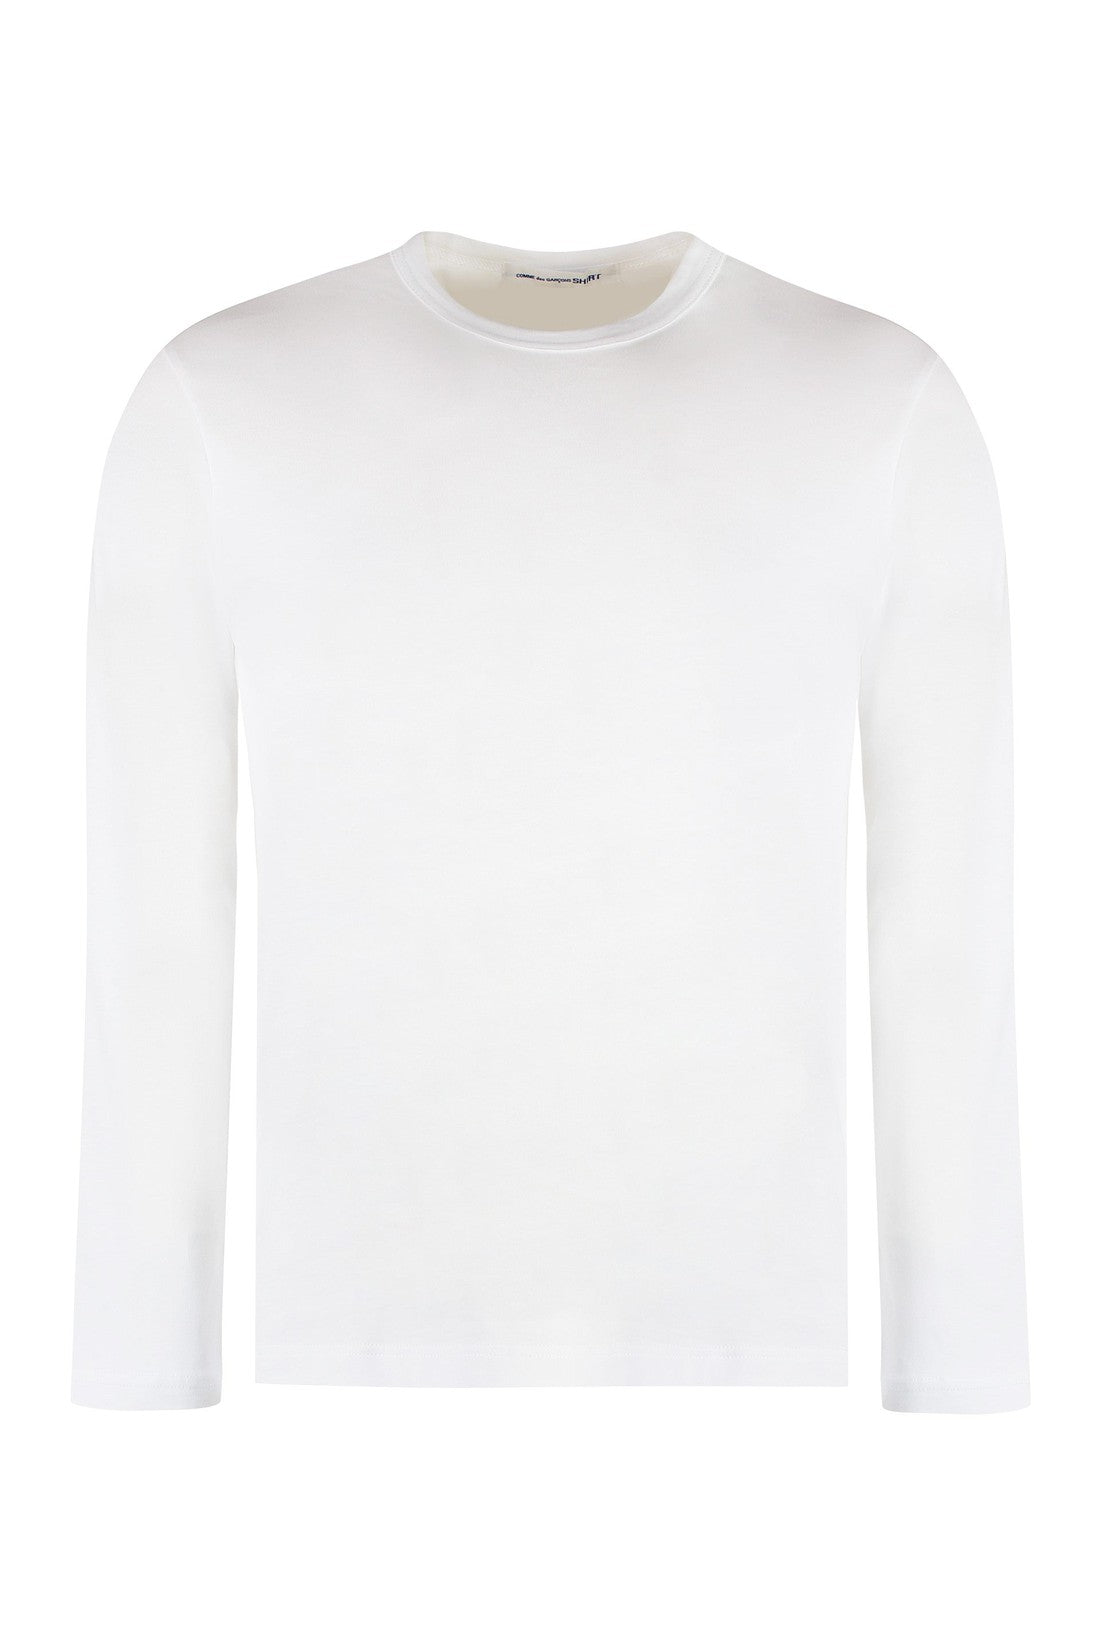 Comme des Garçons SHIRT-OUTLET-SALE-long sleeve cotton t-shirt-ARCHIVIST